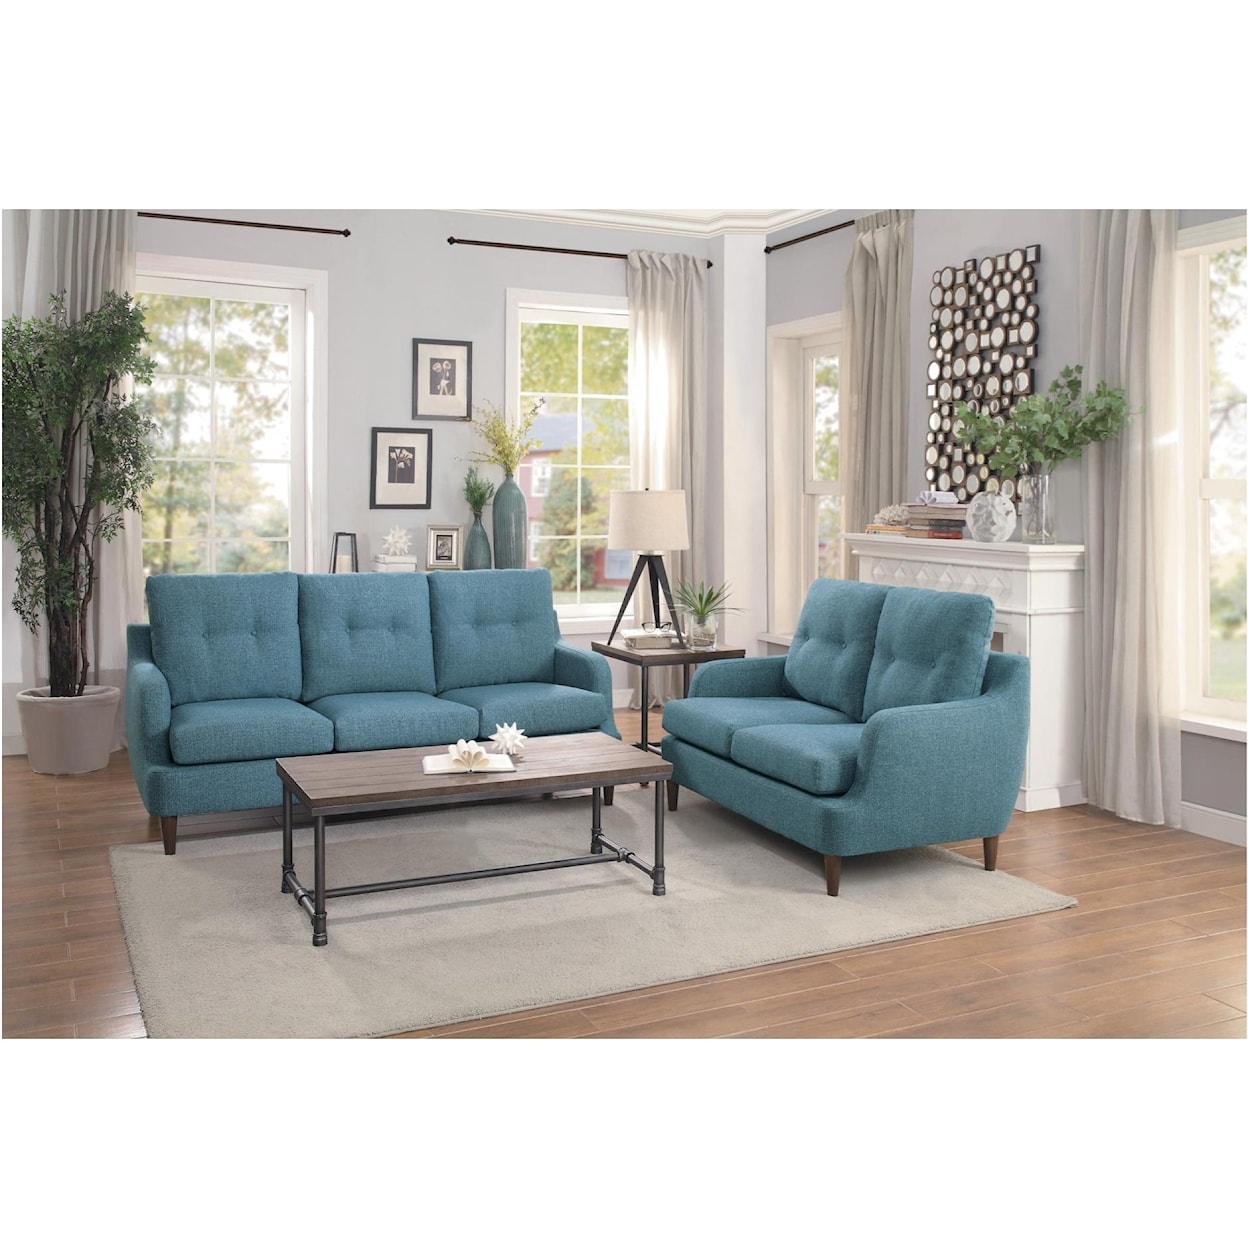 Homelegance Furniture Cagle Stationary Living Room Group